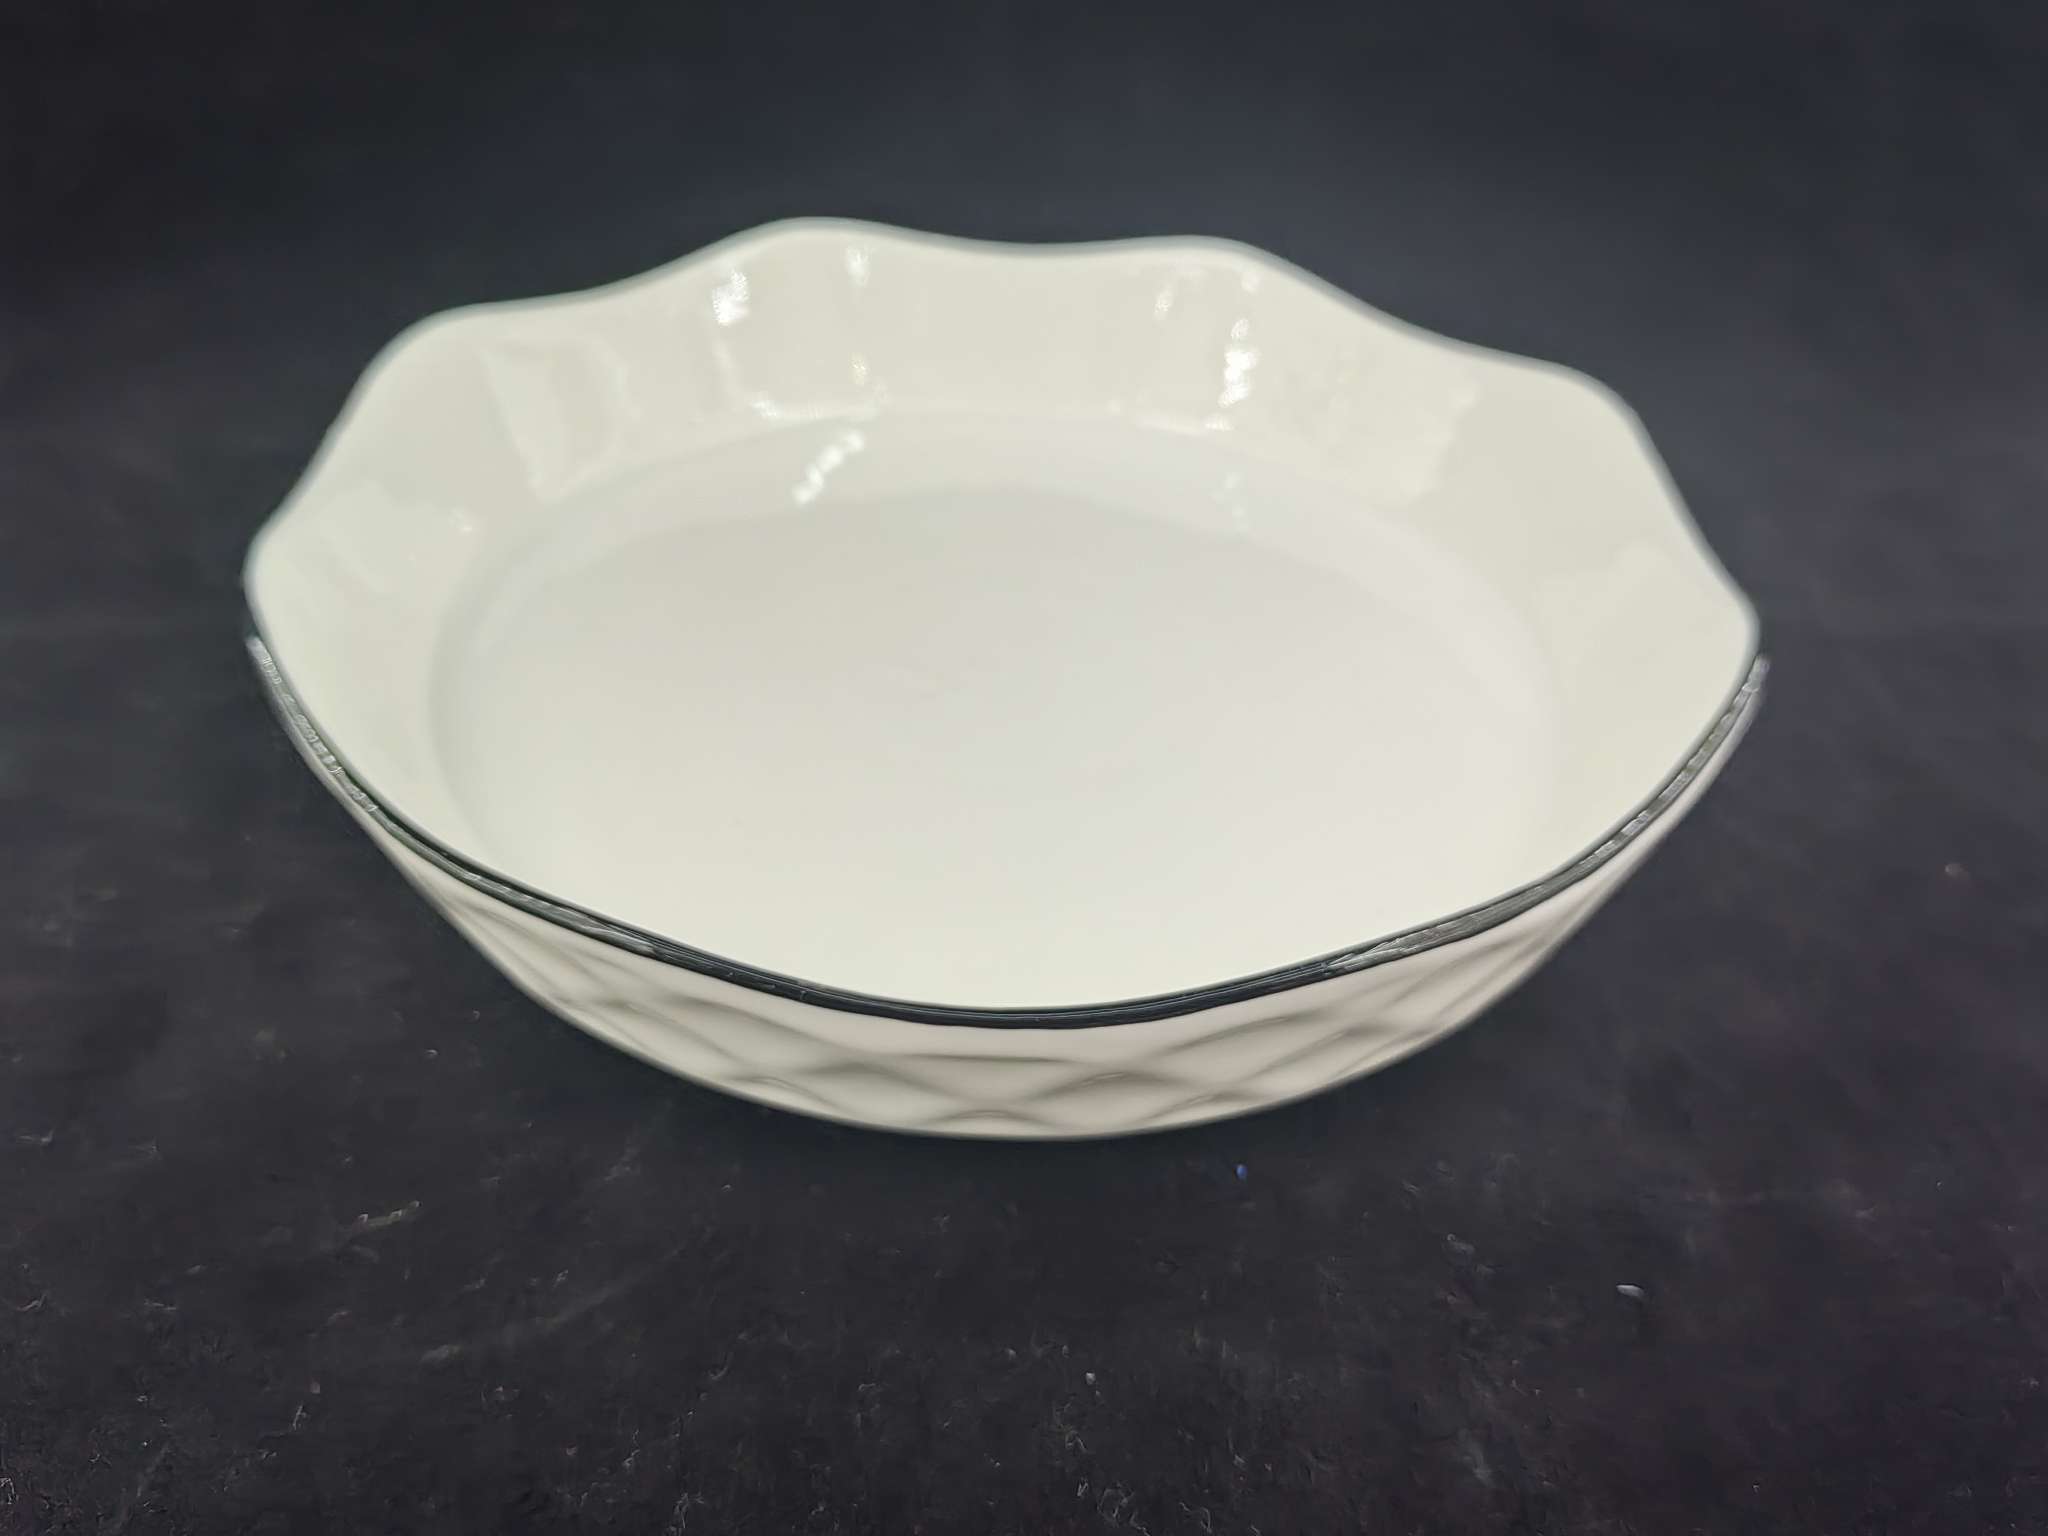 欧式圆形托盘法式陶瓷碟子餐具瓷日用百货欧式圆形托盘碟子餐具瓷图